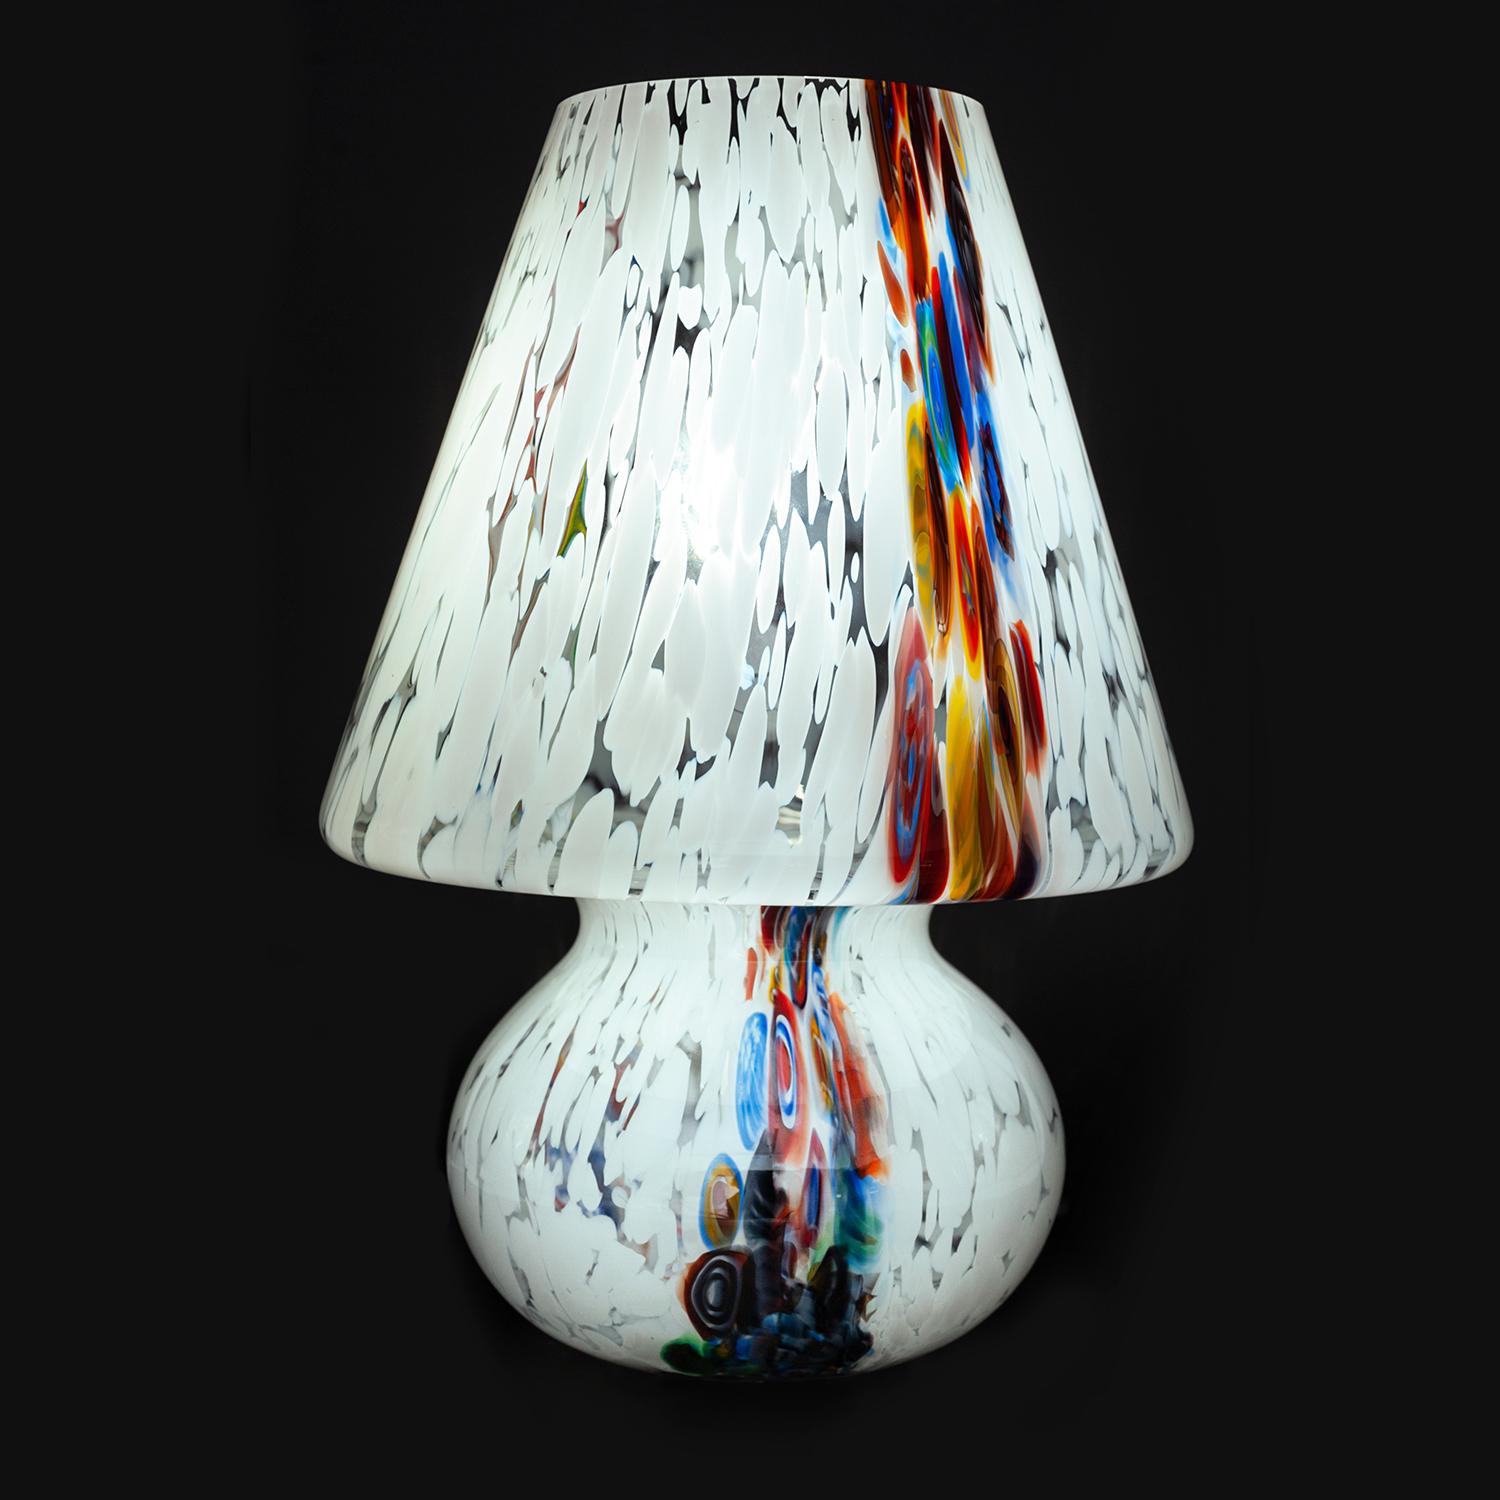 Illumina il tuo ambiente con la bellezza intramontabile del vetro artistico di Murano. Presentiamo una lampada da tavolo unica, realizzata a mano dai rinomati maestri vetrai di Murano. Questa affascinante lampada da tavolo, con il suo design a forma